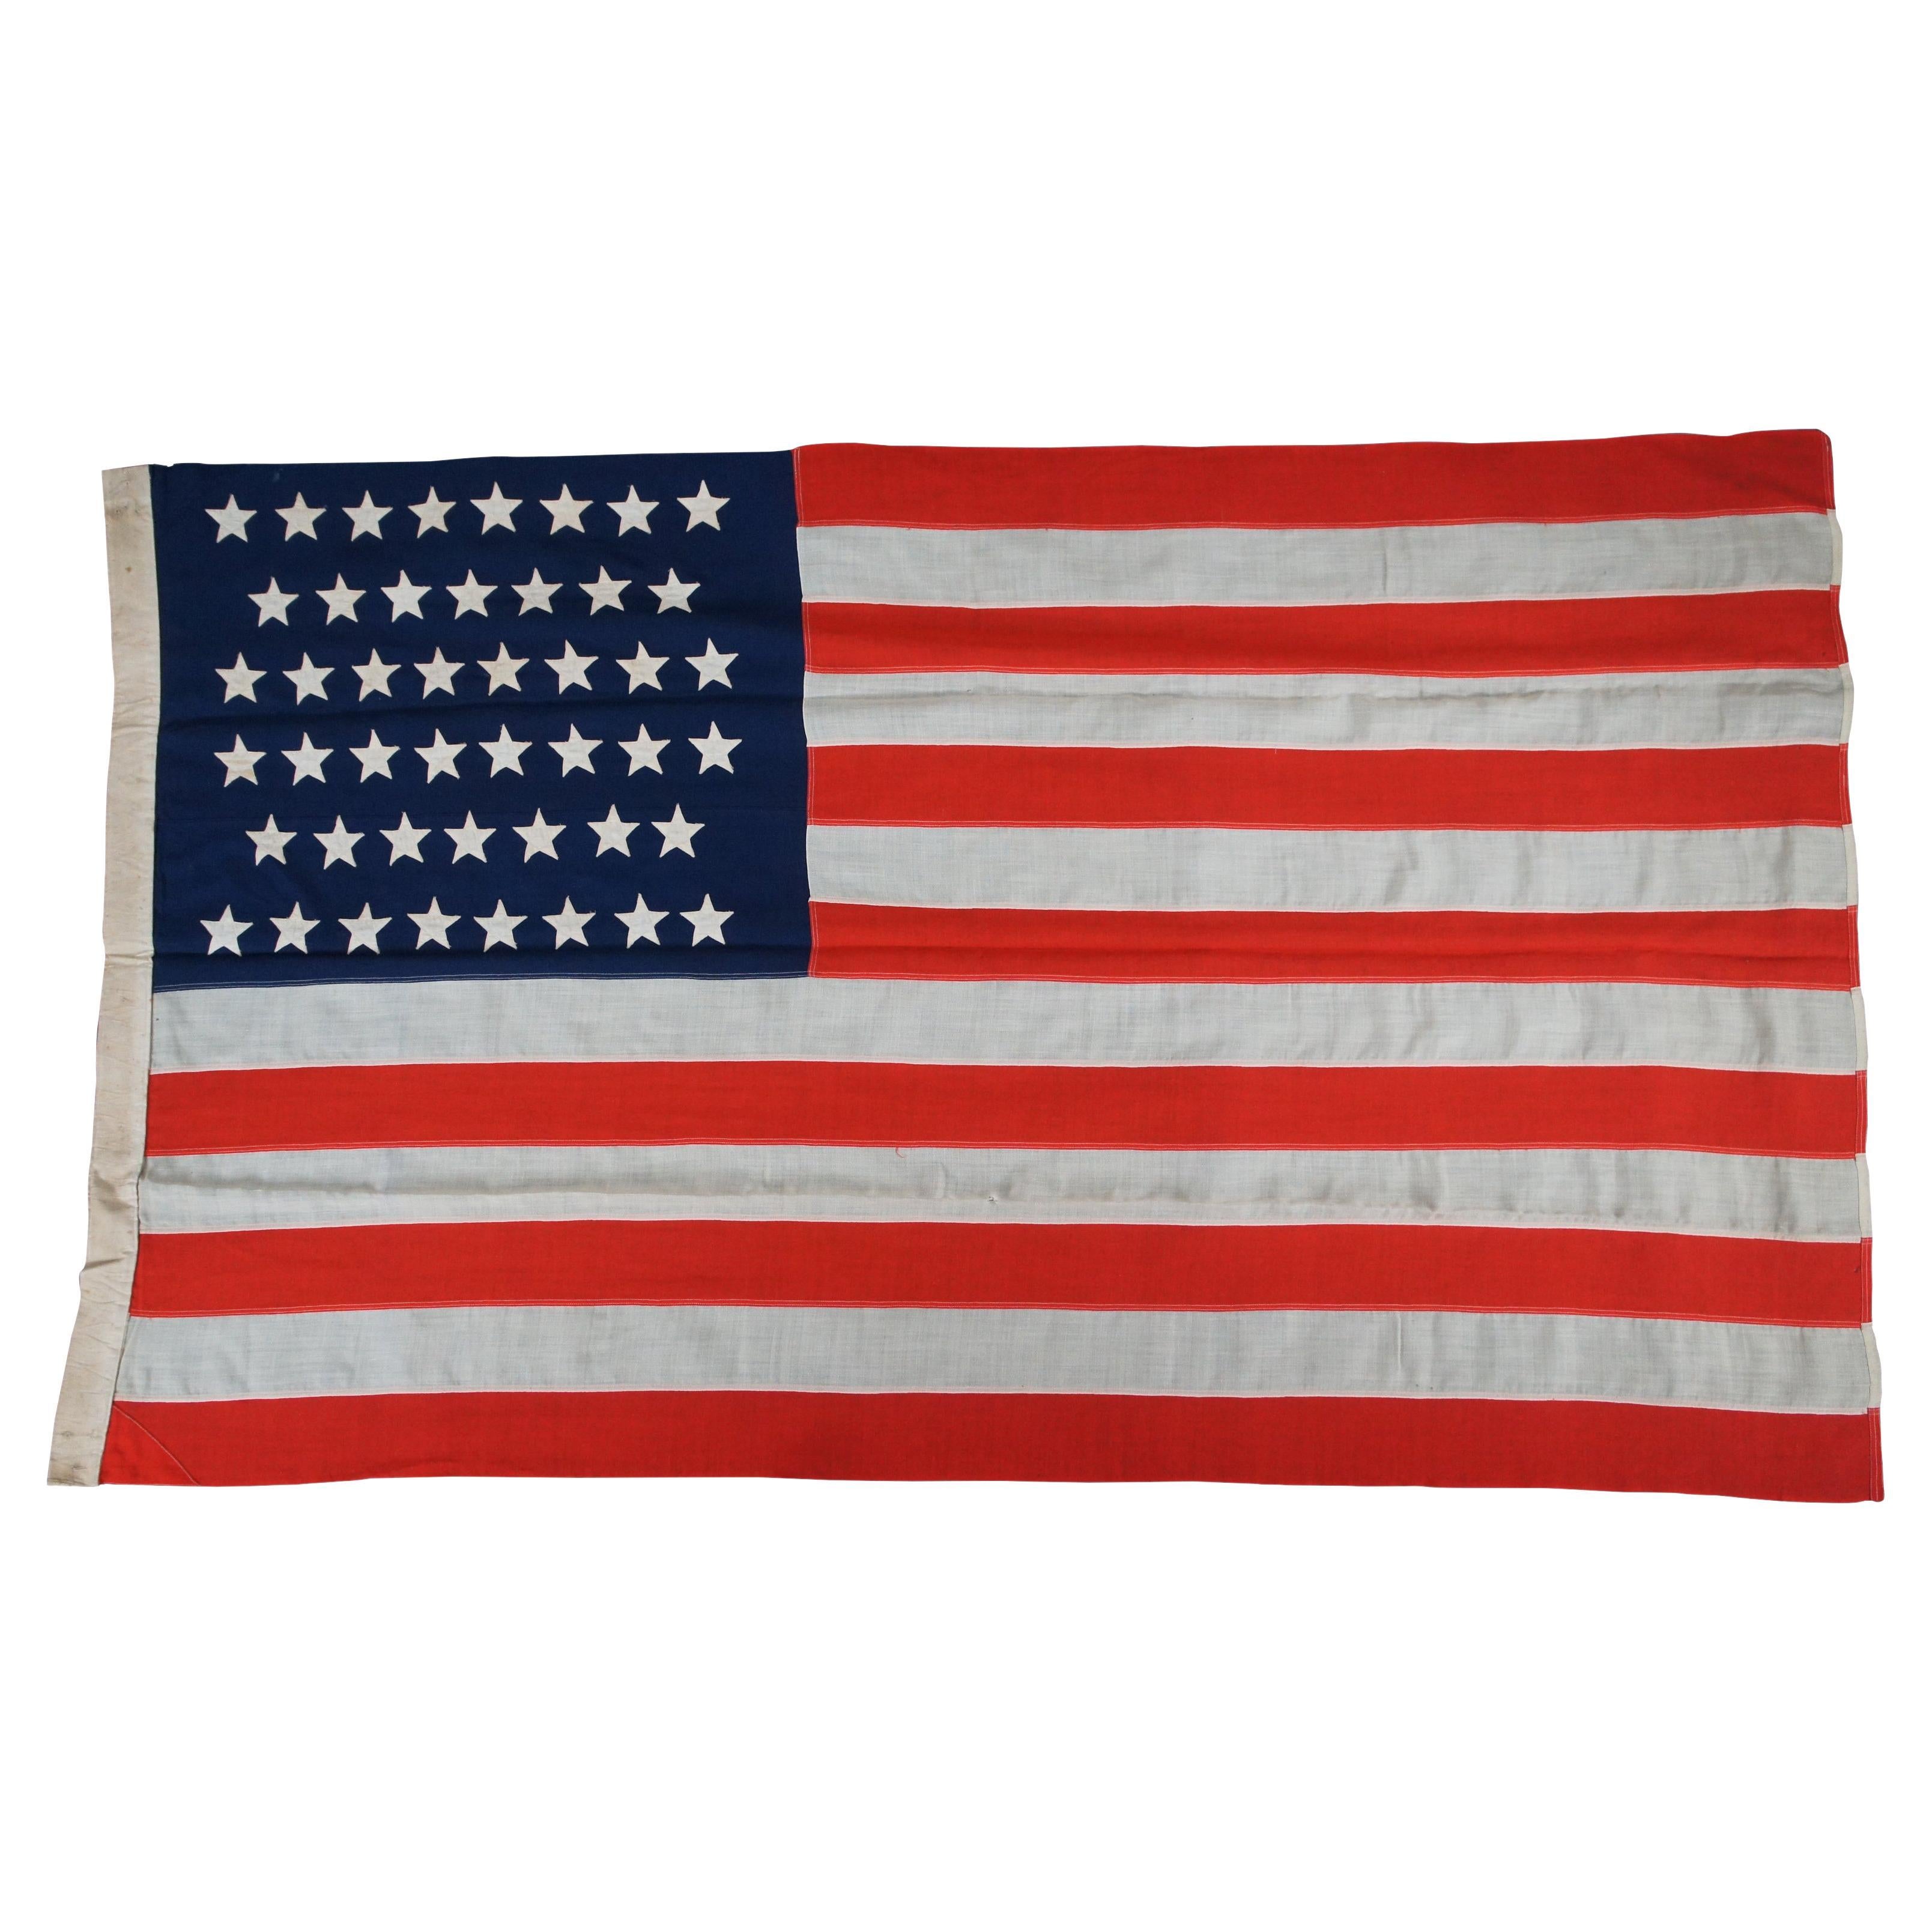 Antique 46 étoiles WMH Horstmann Company United States of America Flag 83" (drapeau des États-Unis d'Amérique)